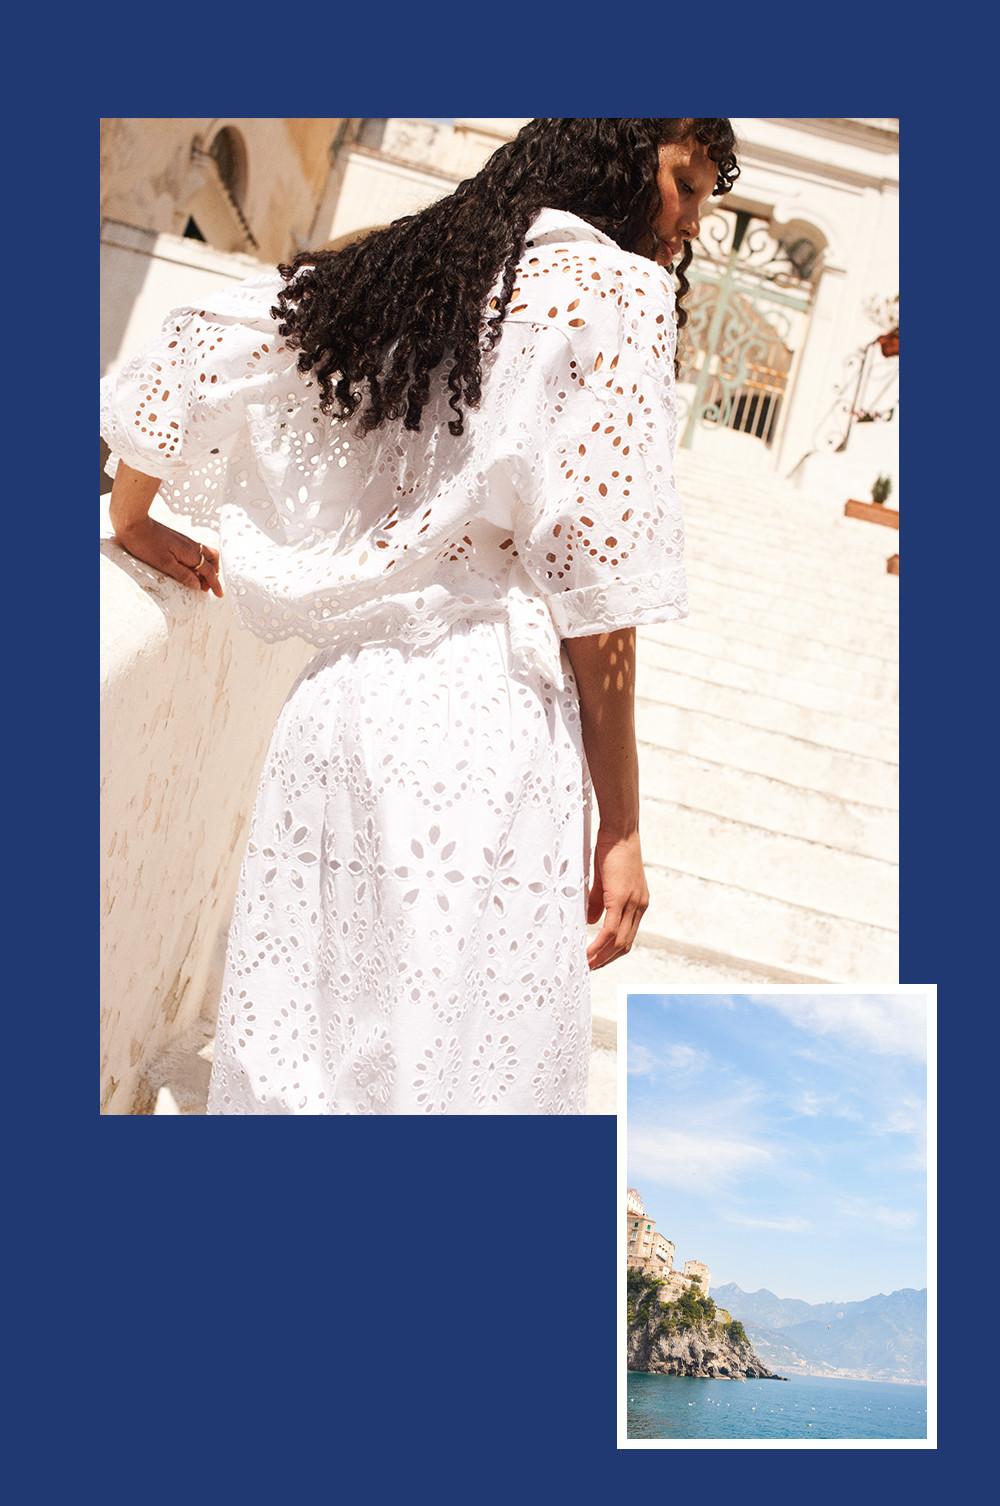 Montage-photo d'une femme portant un haut, une chemise et une jupe en broderie anglaise blanche et l'image d'une plage